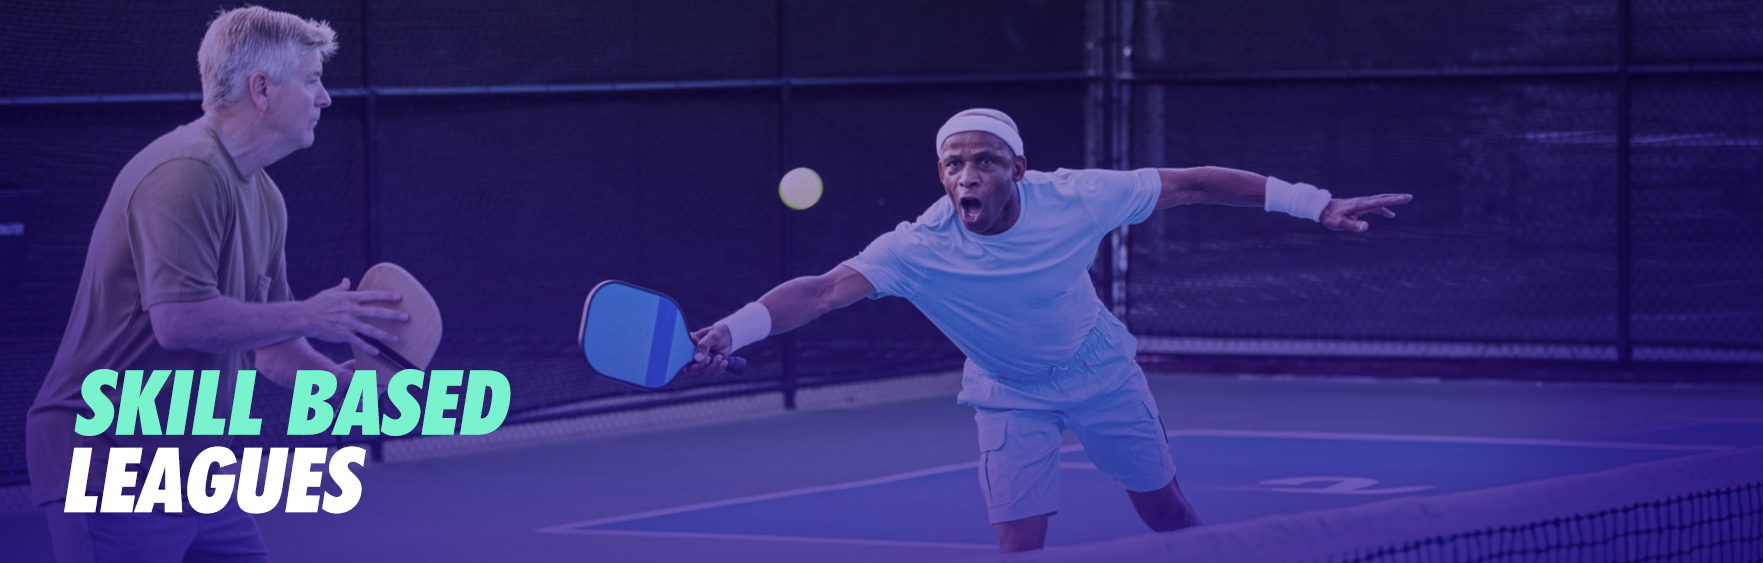 Charleston Tennis Skill Based Leagues